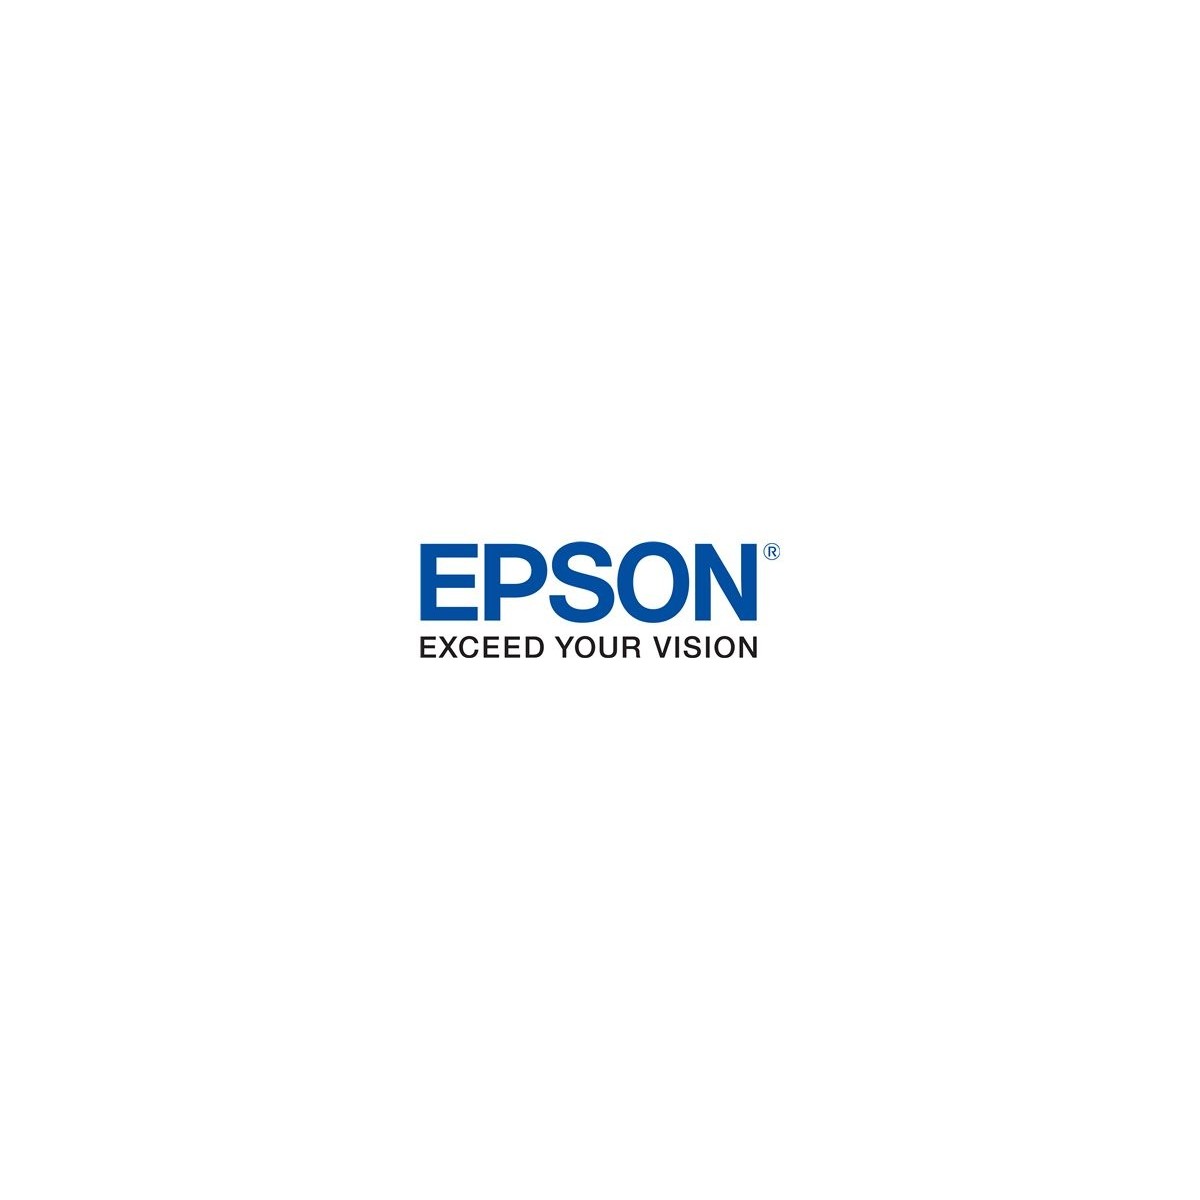 Epson 550-Sheet Paper Cassette - Paper tray - Epson - EPL-N2550T EPL-N2550DT EPL-N2550D EPL-N2550 - 550 sheets - China - Plain